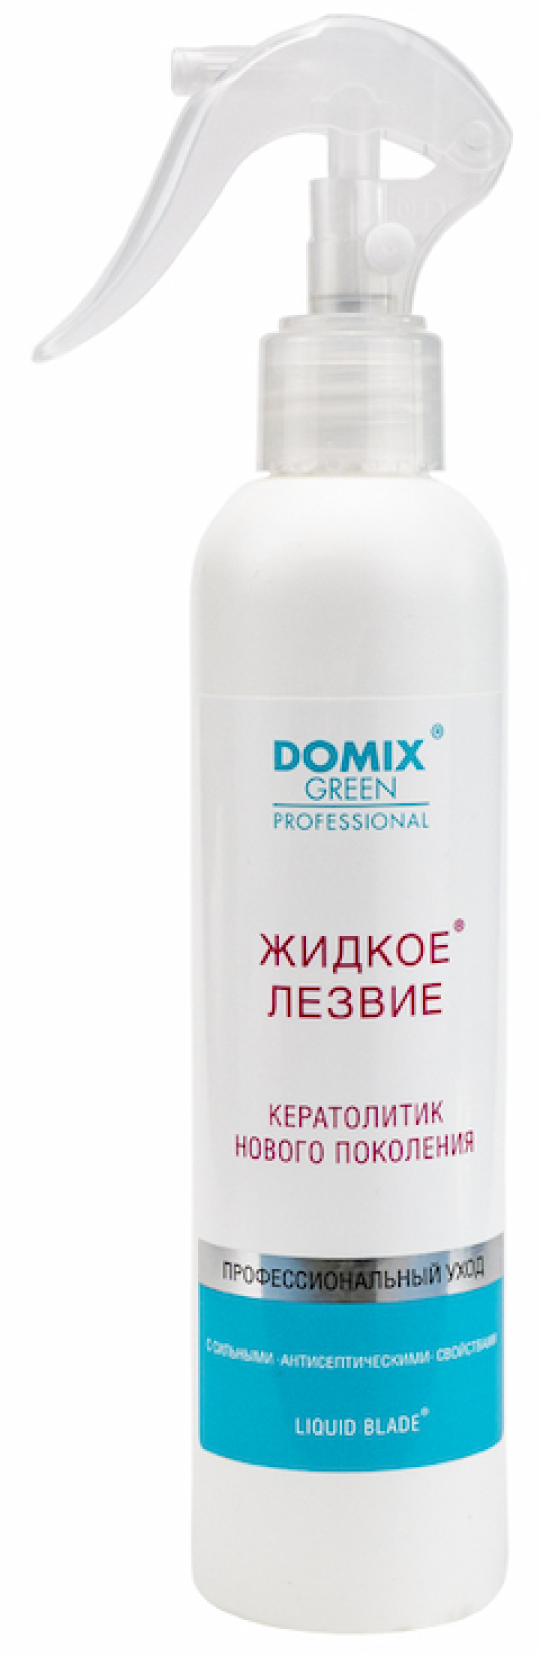 Жидкое лезвие - кератолитик Domix, DGP нового поколения, 250 мл